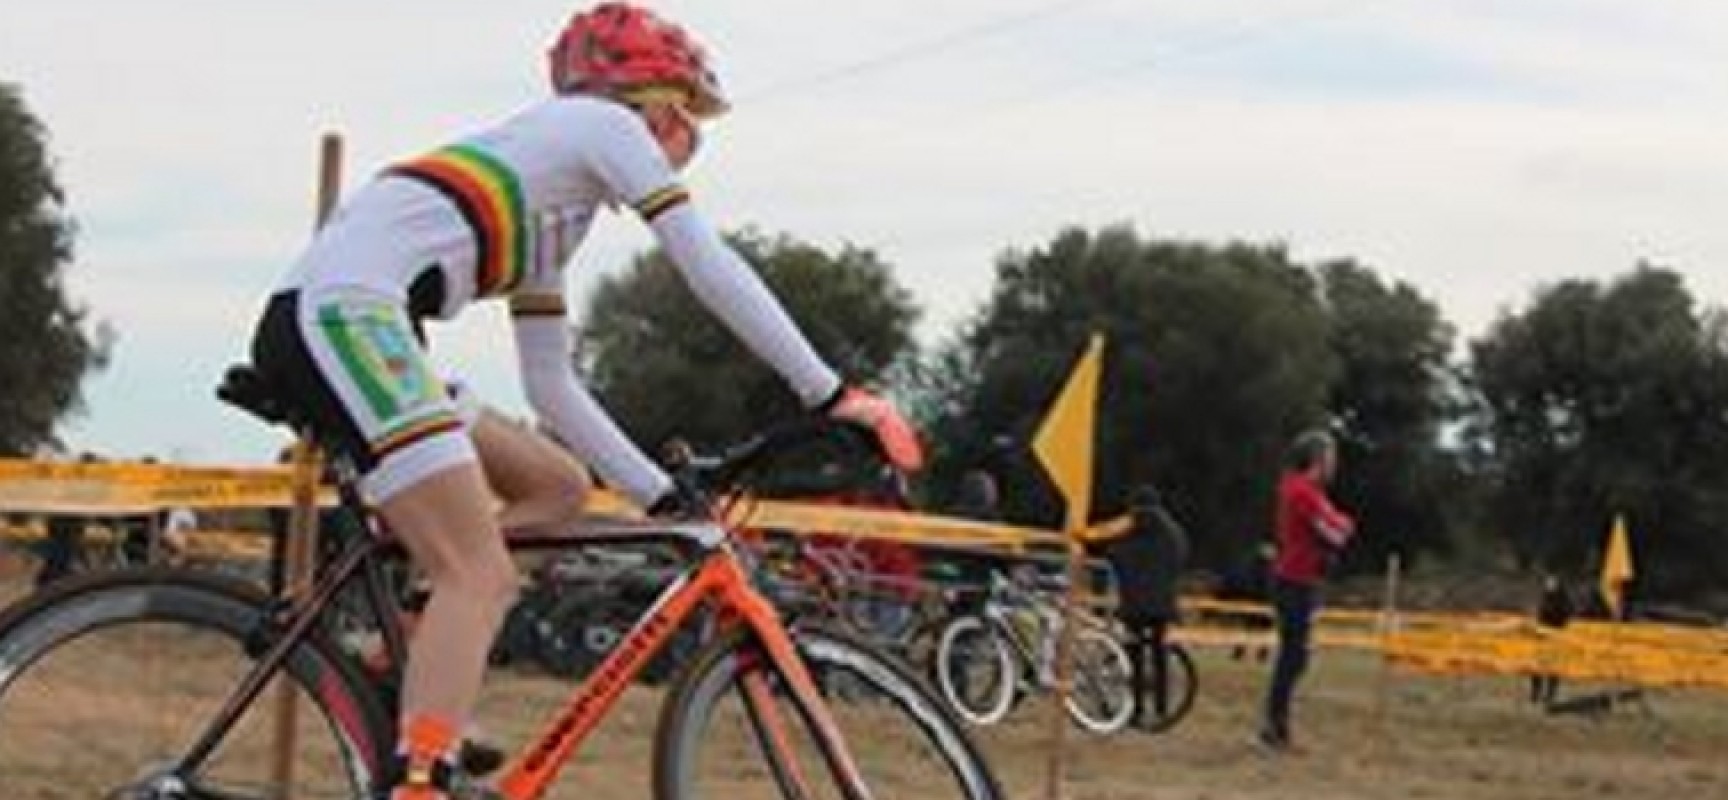 Gaetano Cavallaro, buoni risultati ai Campionati Italiani di Cyclocross / FOTO